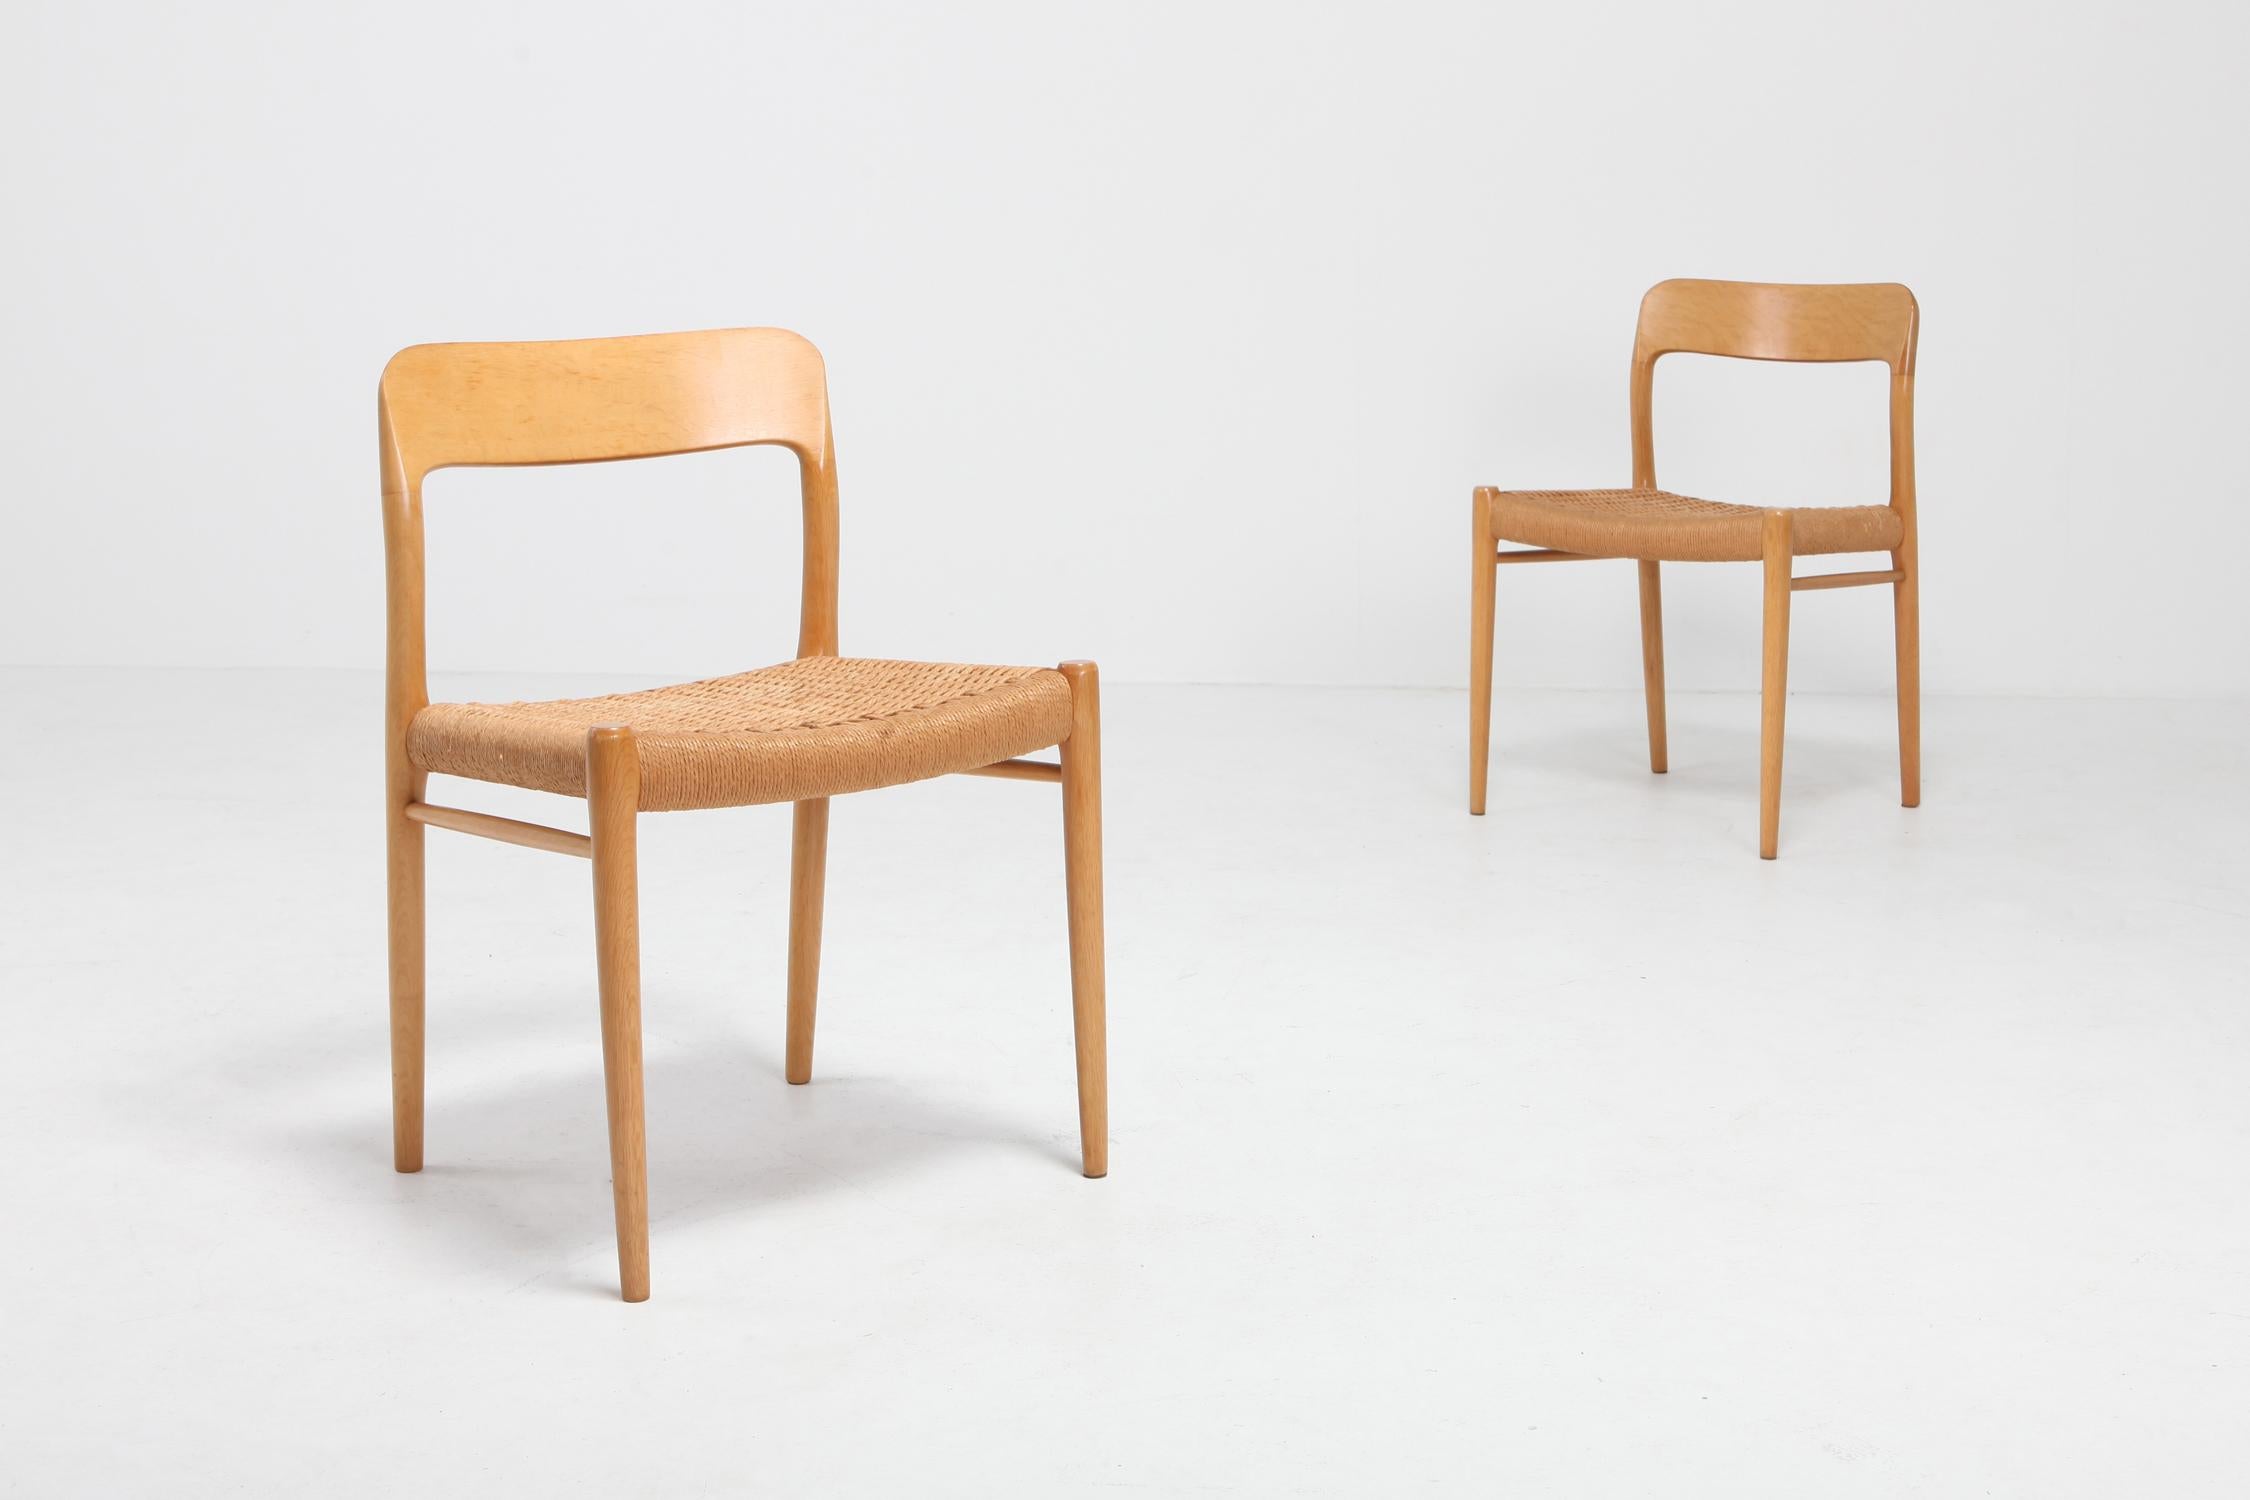 Danish Scandinavian Modern Chairs in Oak by N.O. Möller for J.L. Moller